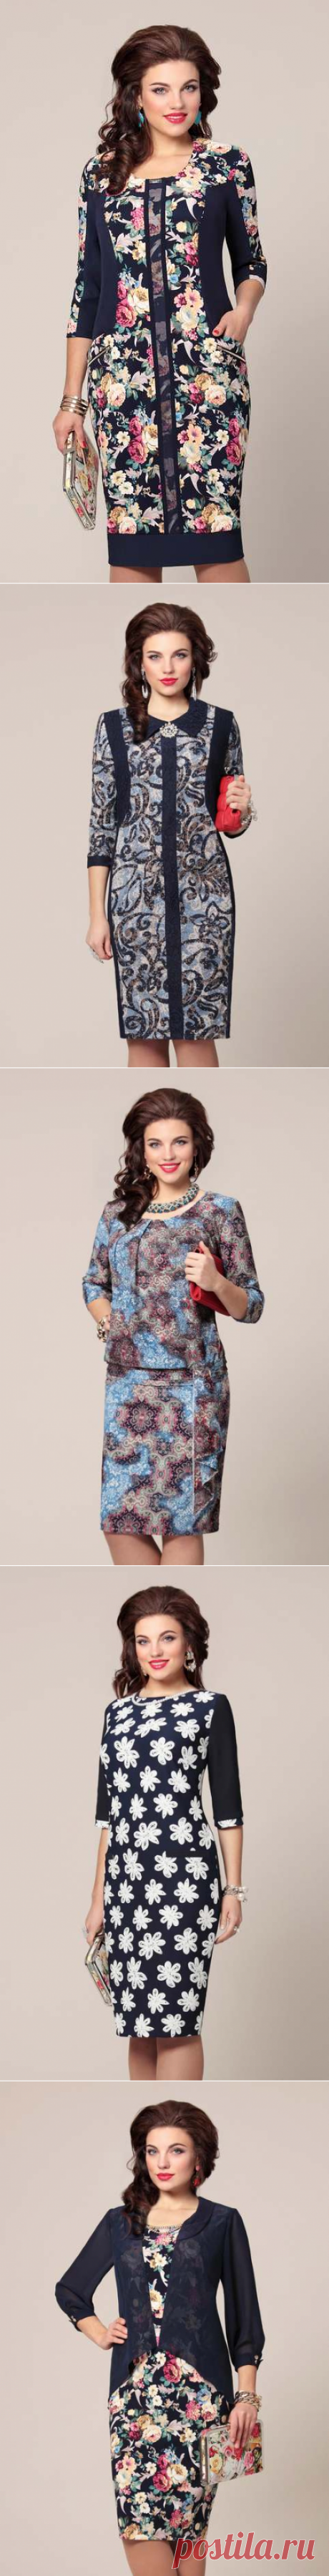 Платья для полных модниц белорусской компании Vittoria Queen. Осень-зима 2015-2016 | Платья и сарафаны для полных (5000 фото)